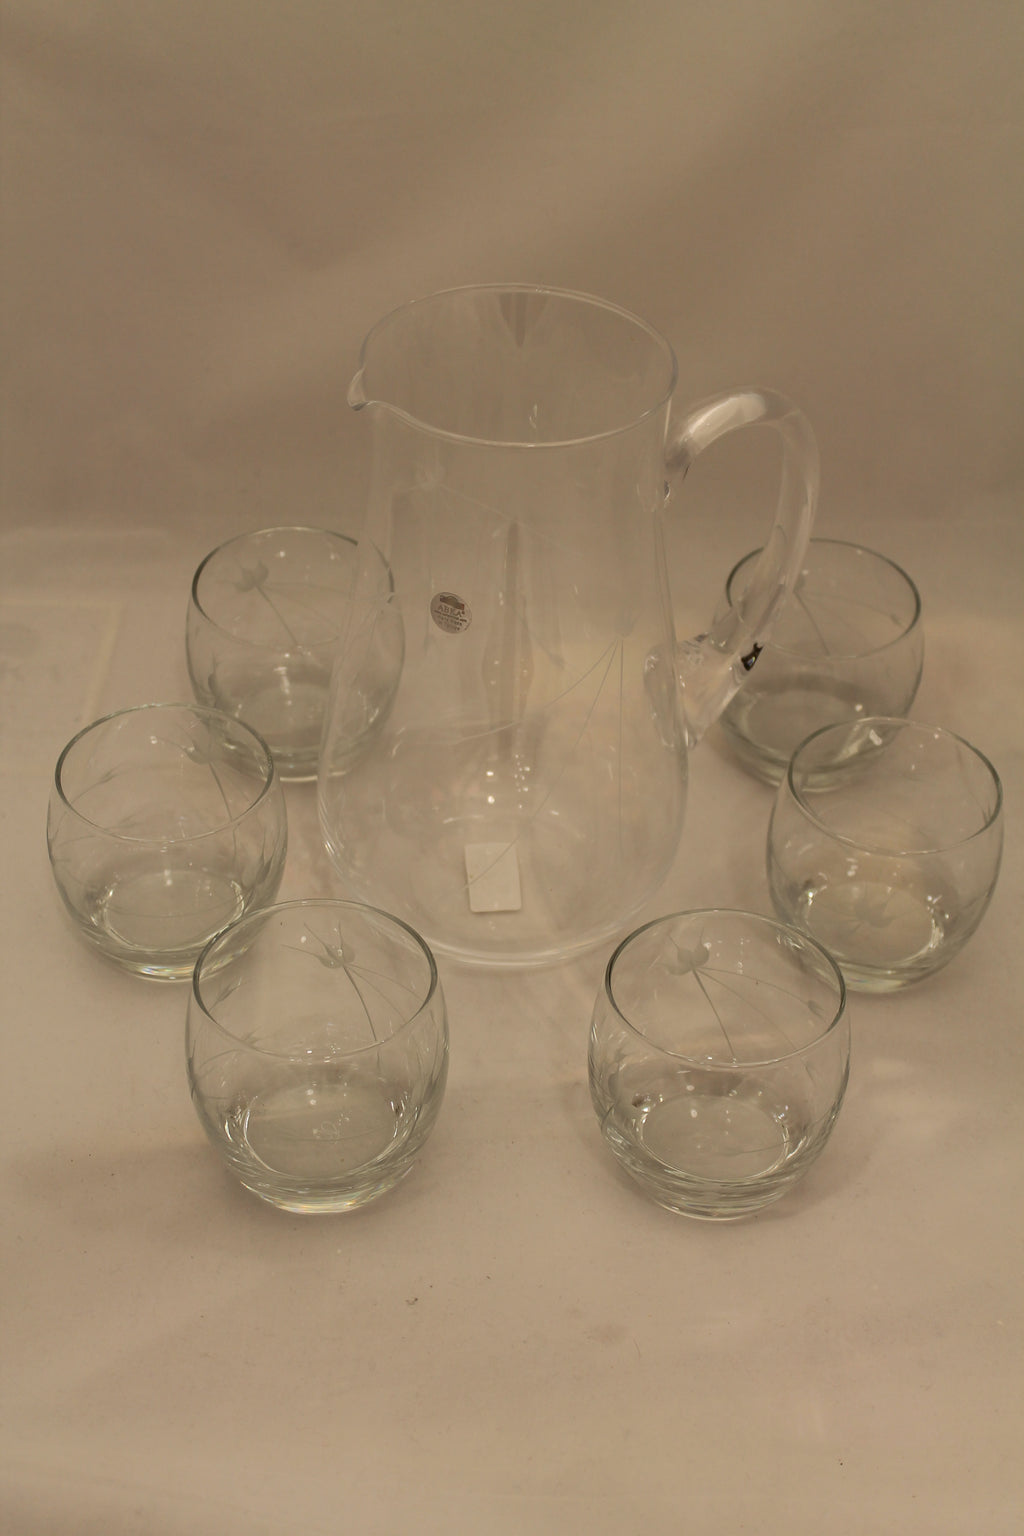 Abka Drink Set, Glass Set, Crystal Drinking Set, Handcrafted, Water Glasses